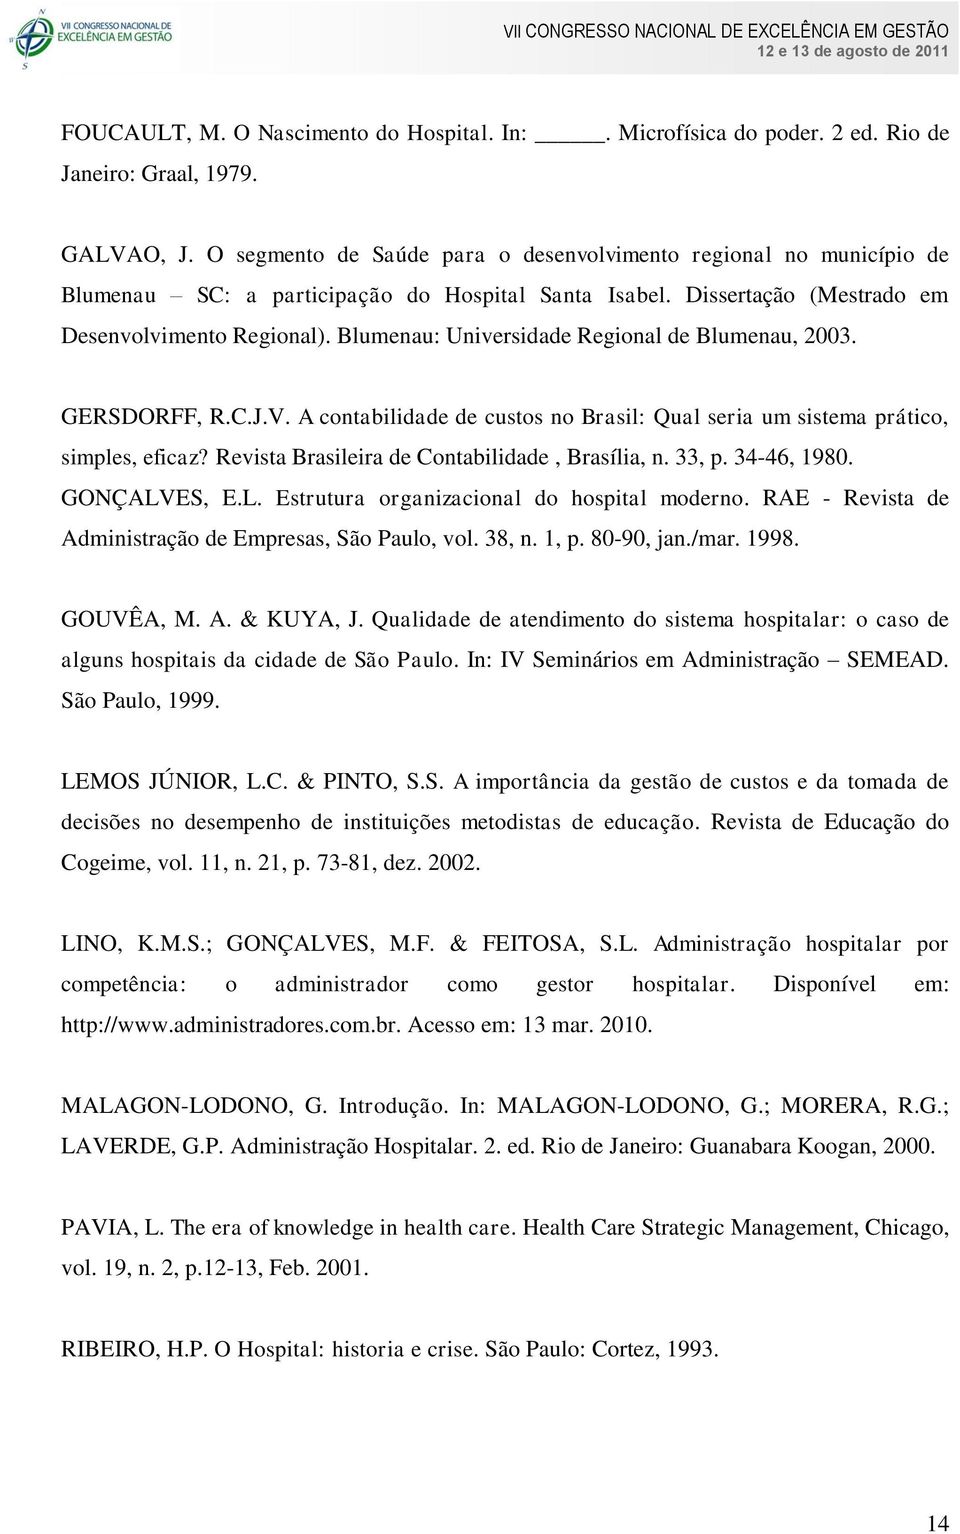 Blumenau: Universidade Regional de Blumenau, 2003. GERSDORFF, R.C.J.V. A contabilidade de custos no Brasil: Qual seria um sistema prático, simples, eficaz?